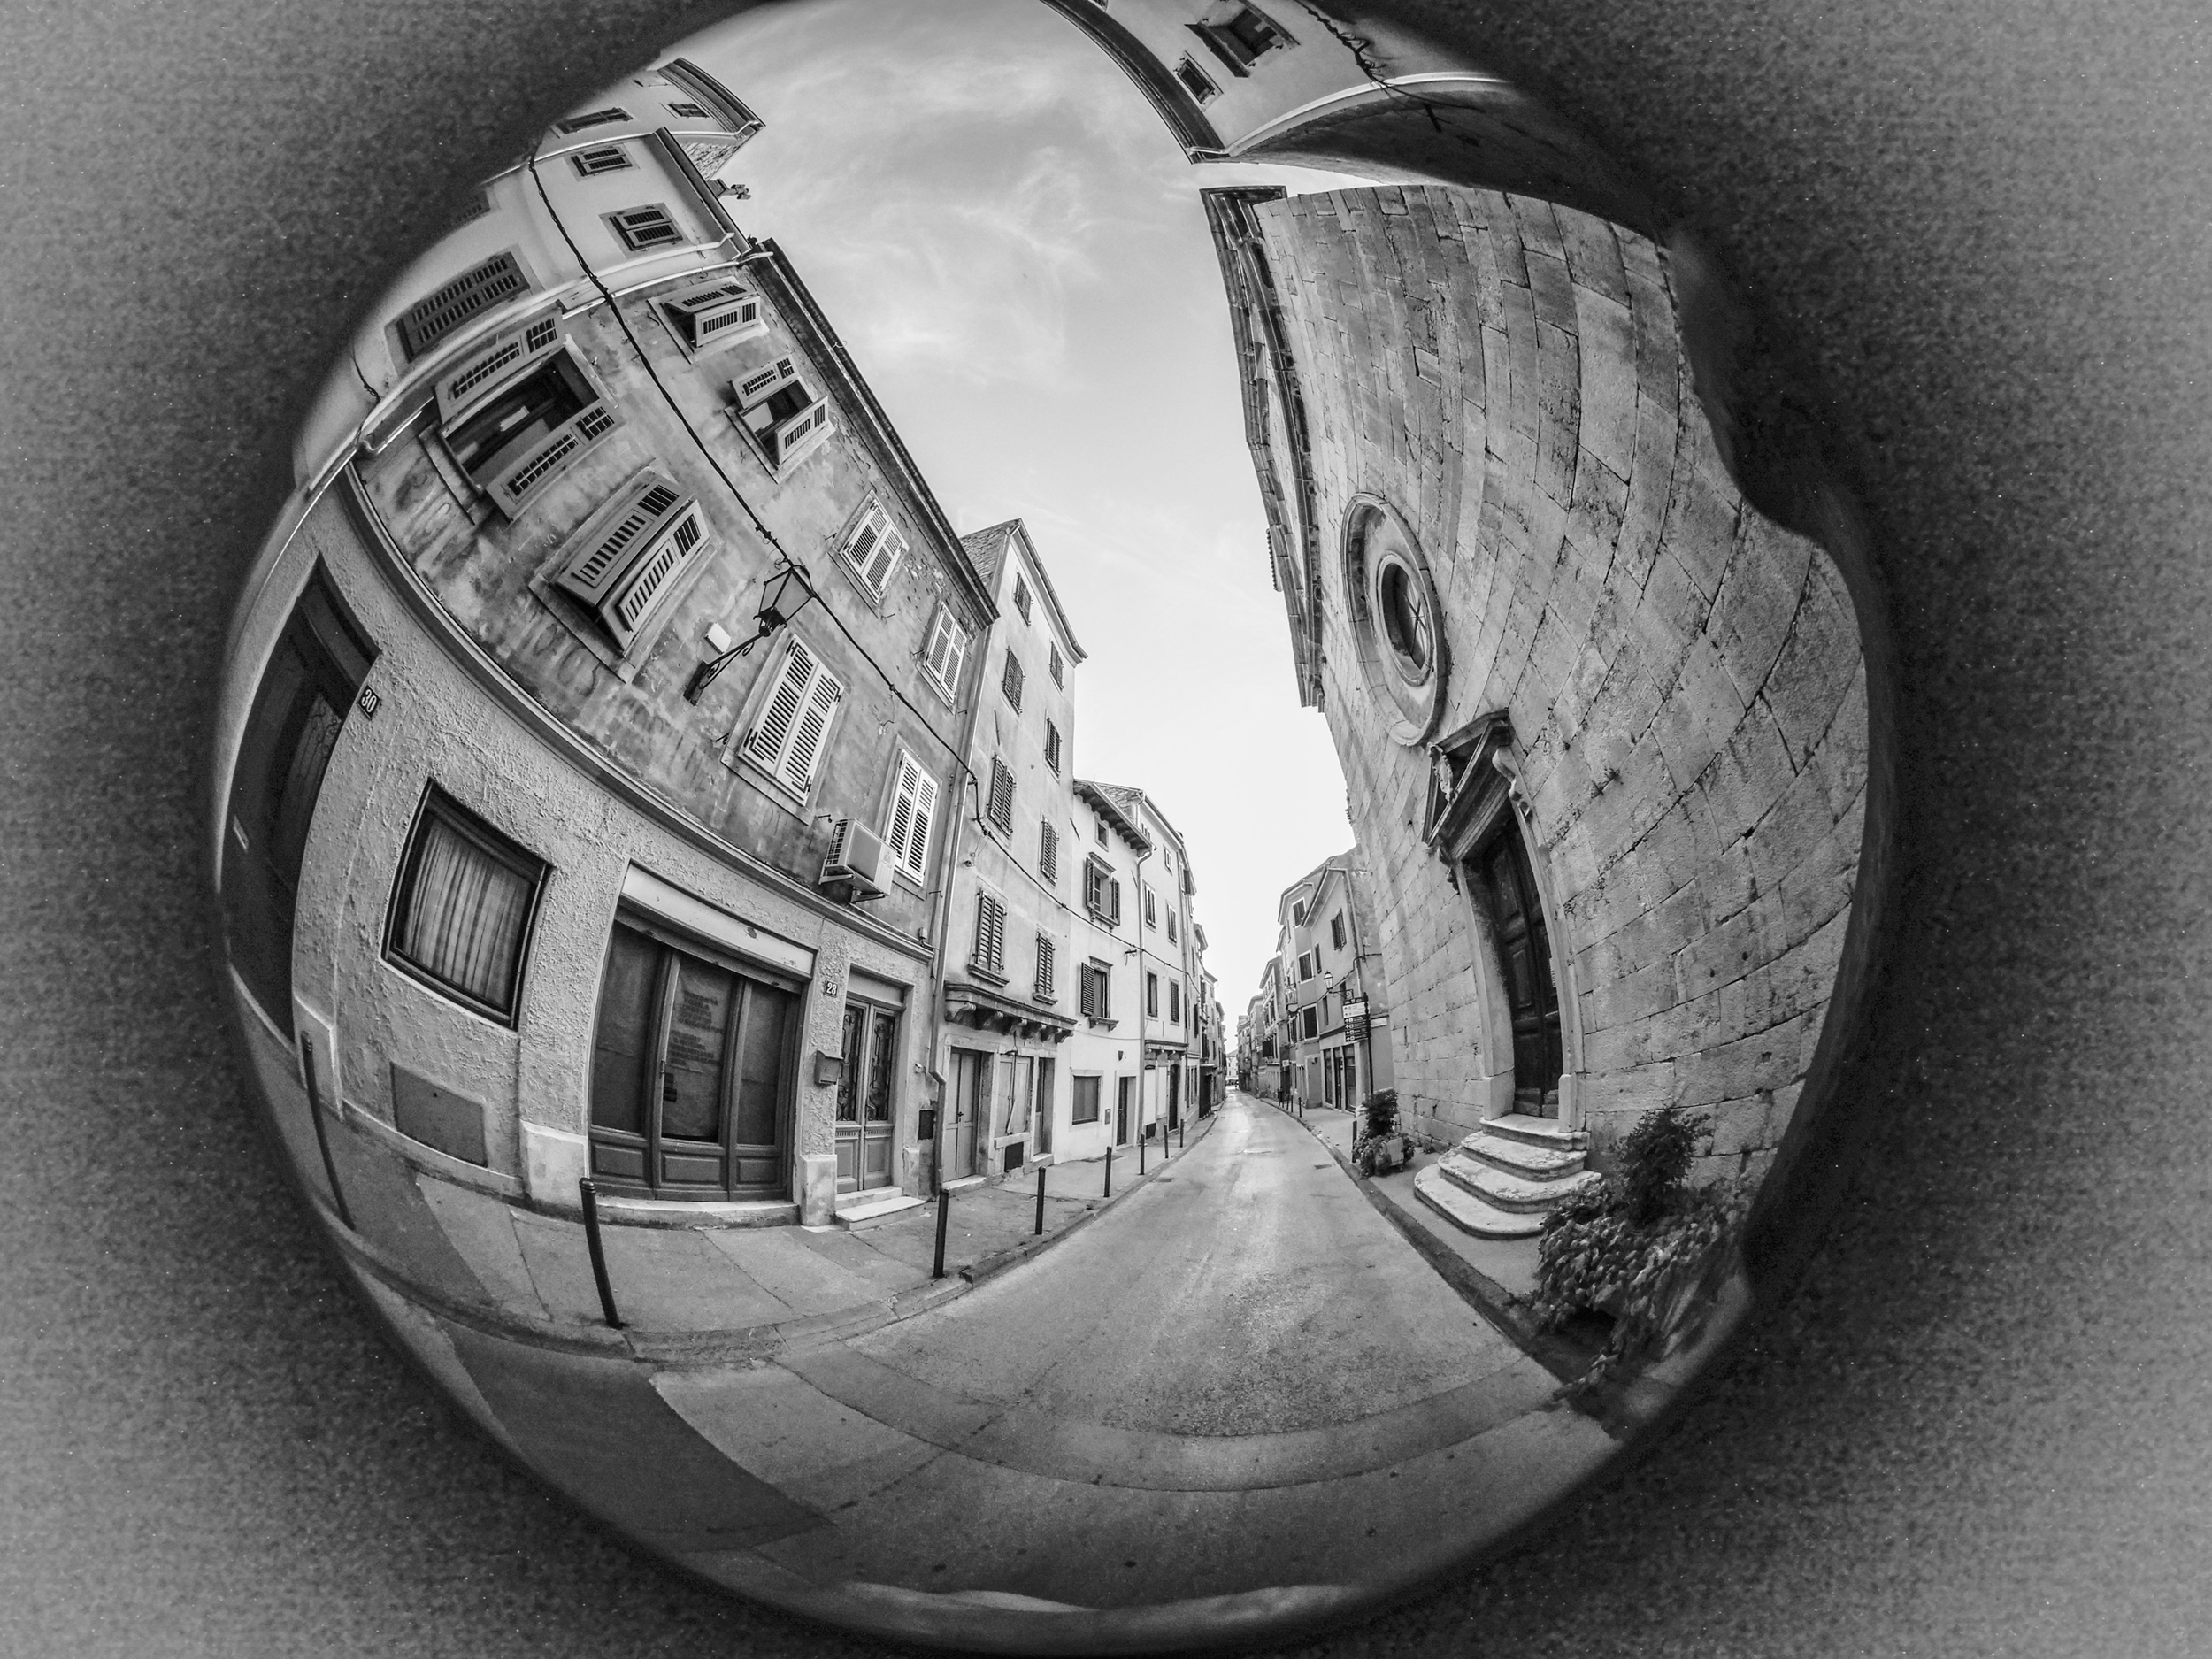 Die Gassen von Vodnjan (Dignano) in Istrien, in Anlehnung an den genialen M.C.Escher